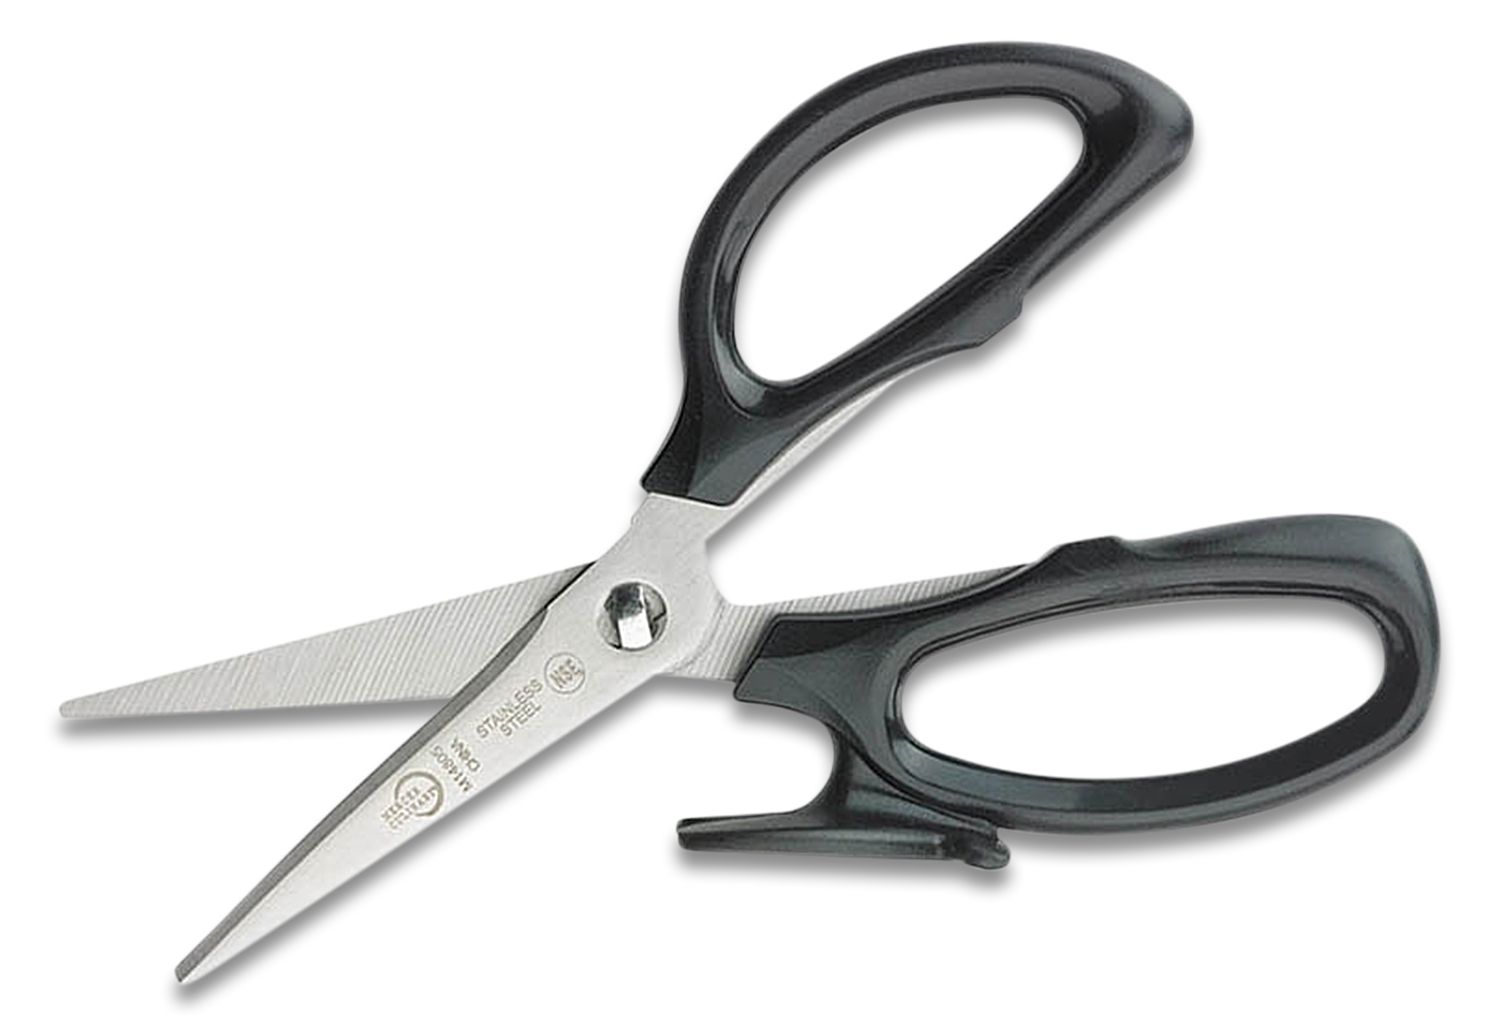 Mercer Culinary All-Purpose Scissors, 8-Inch